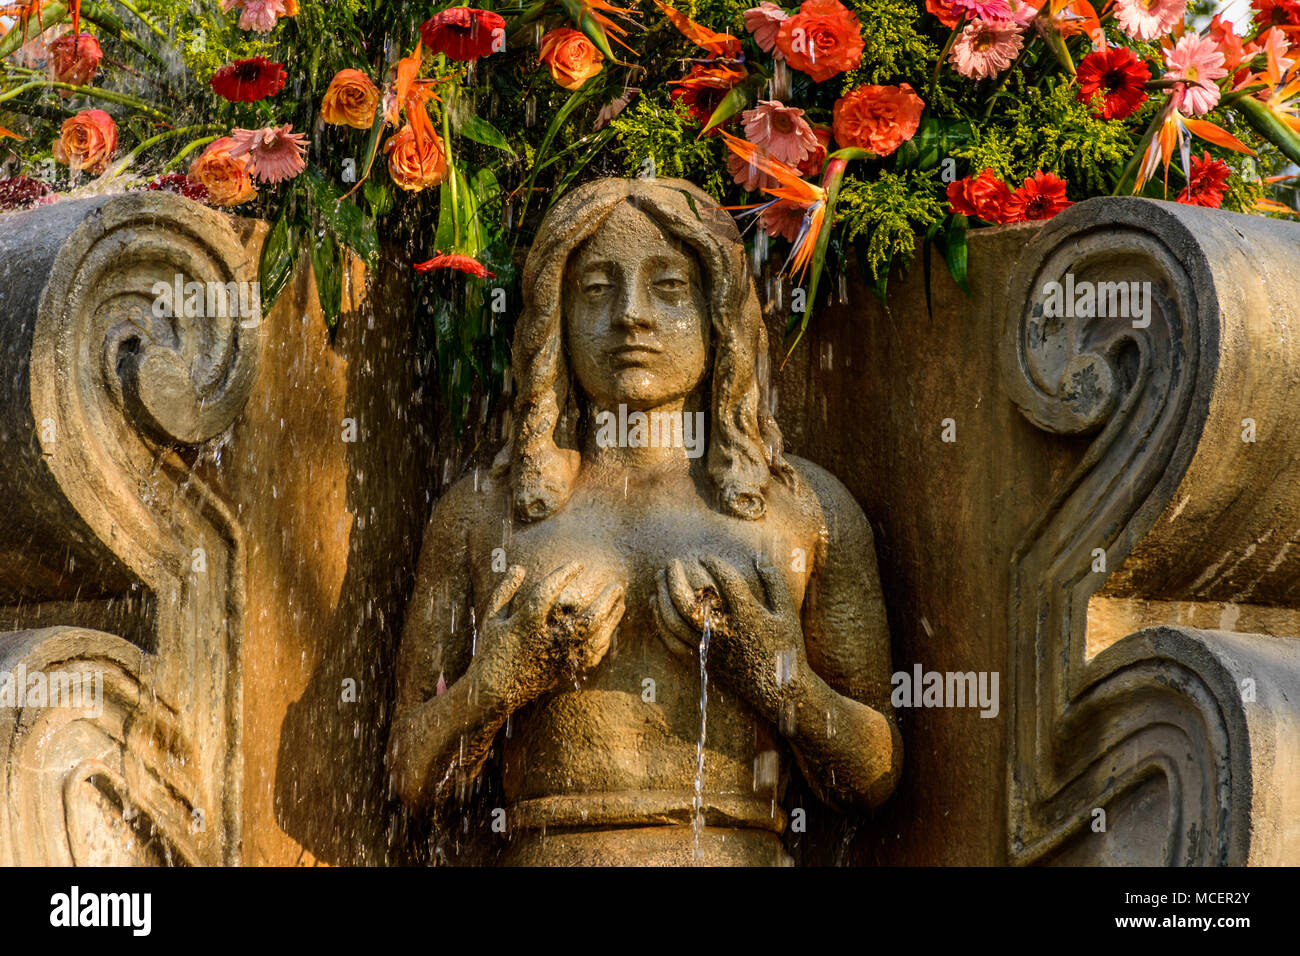 Antigua, Guatemala - 9 mars, 2018 : Libre de sirène fontaine en place centrale de la ville coloniale et site du patrimoine mondial de l'UNESCO Banque D'Images